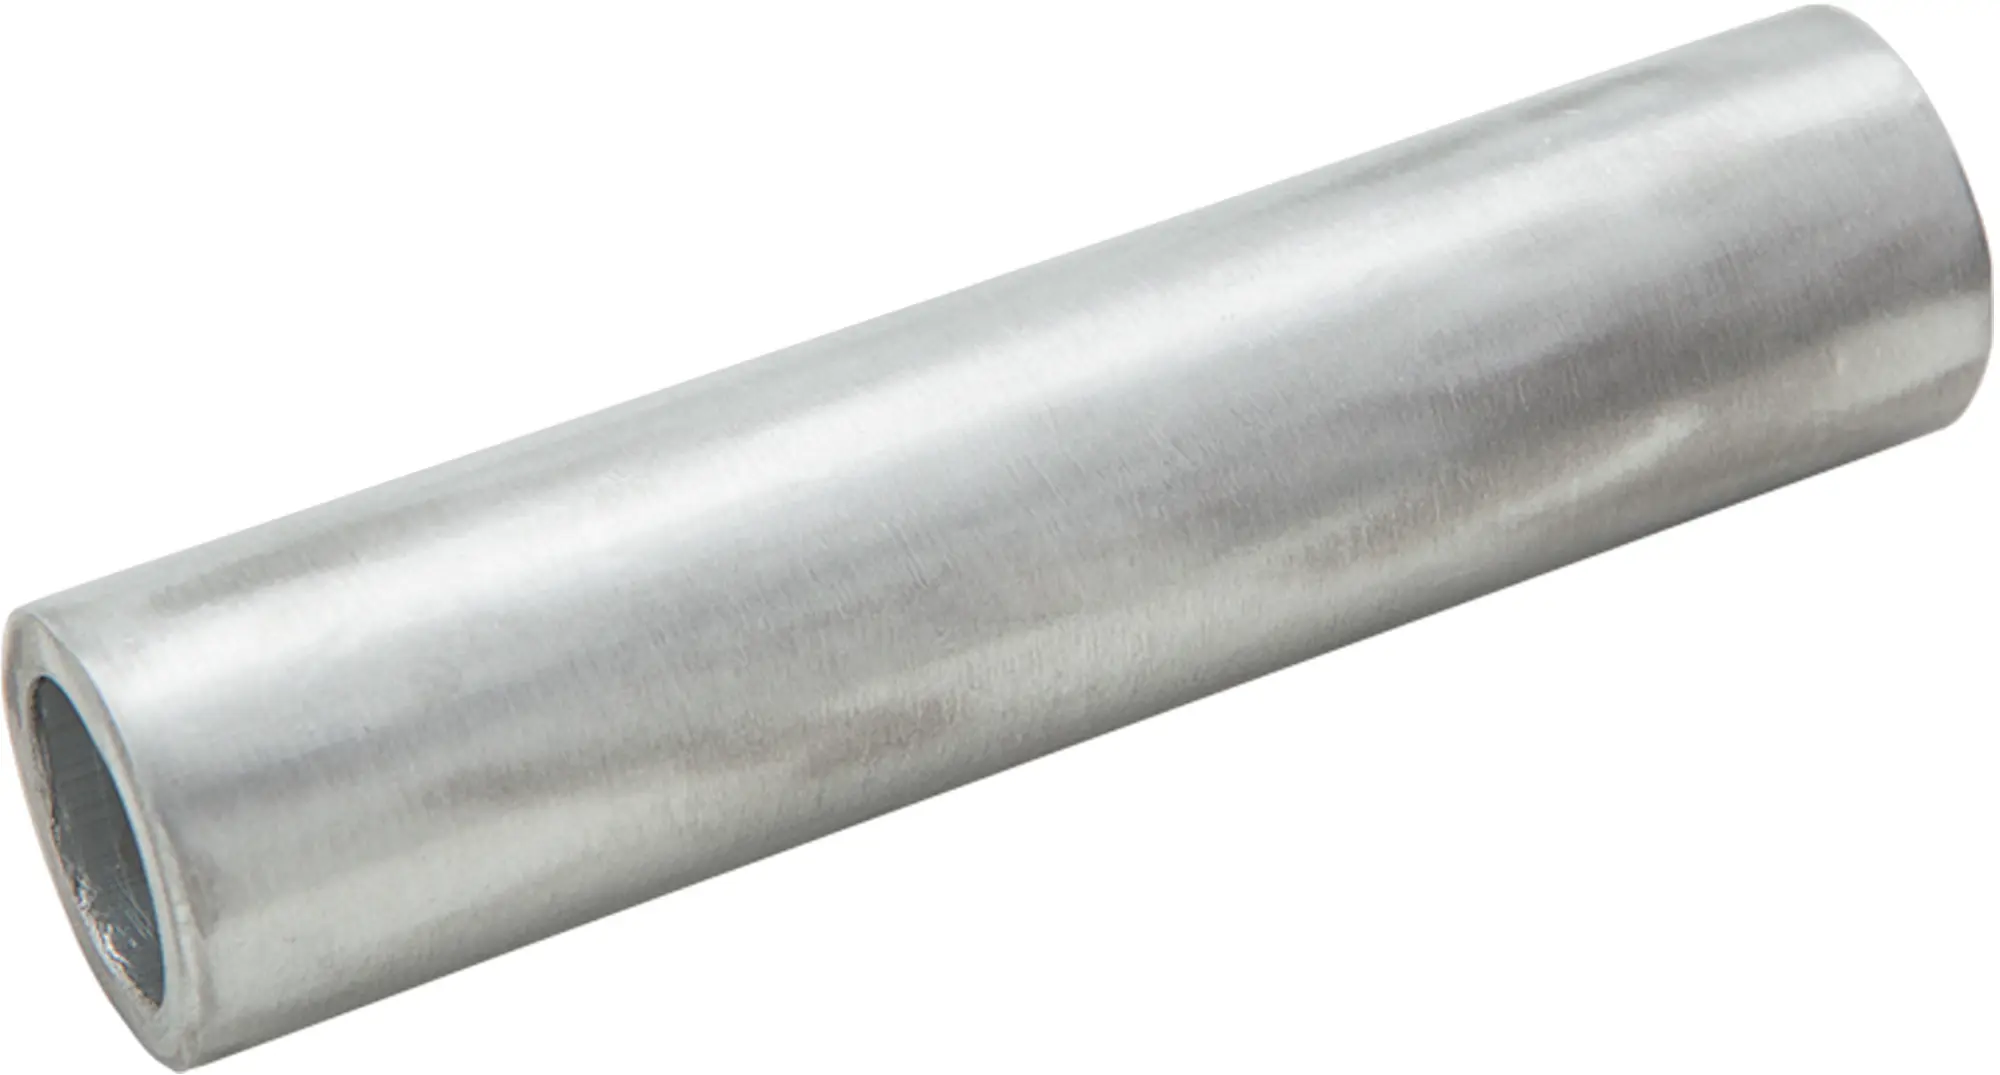 Гильза кабельная луженая Duwi ГМЛ 4-3 мм медь 5 шт. гильза кабельная луженая duwi гмл 16 6 мм медь 5 шт